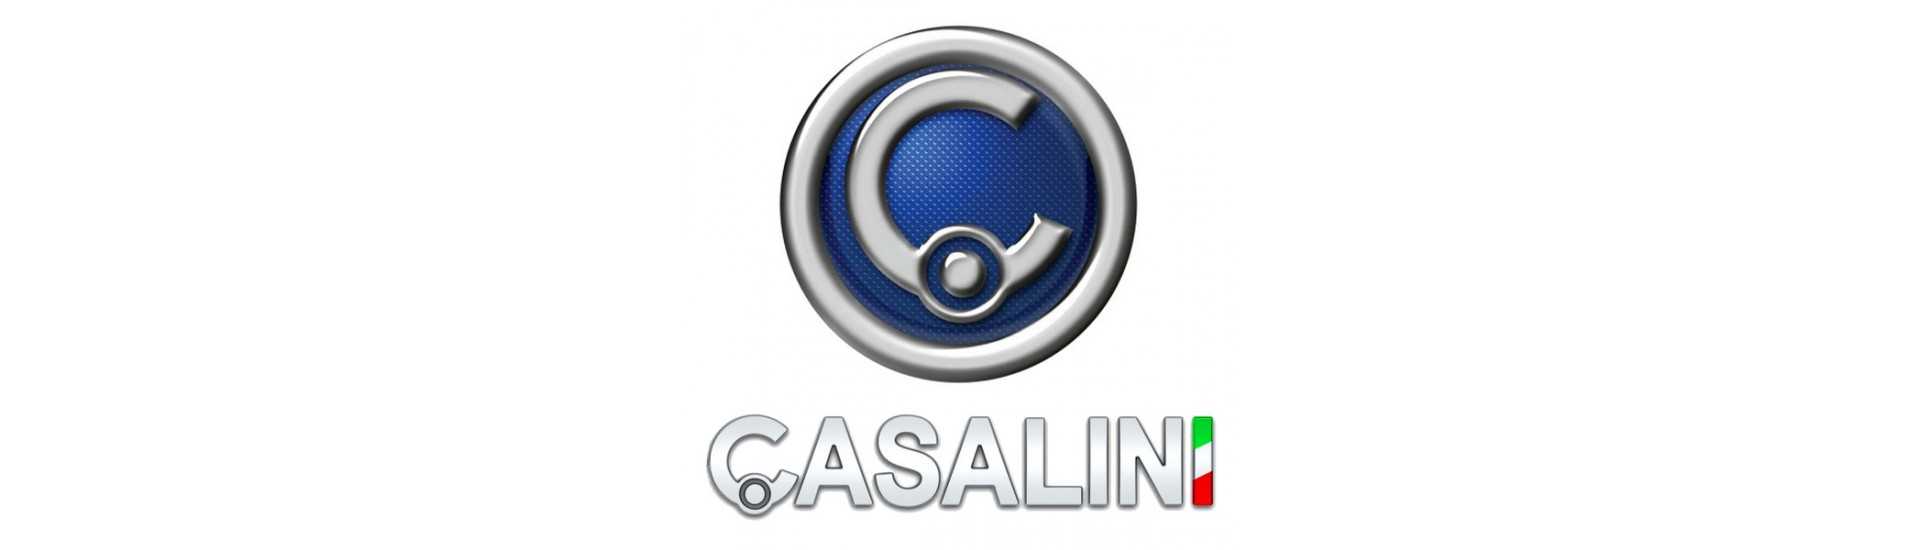 Moyeu + freno disco al mejor precio coche sin licencia Casalini